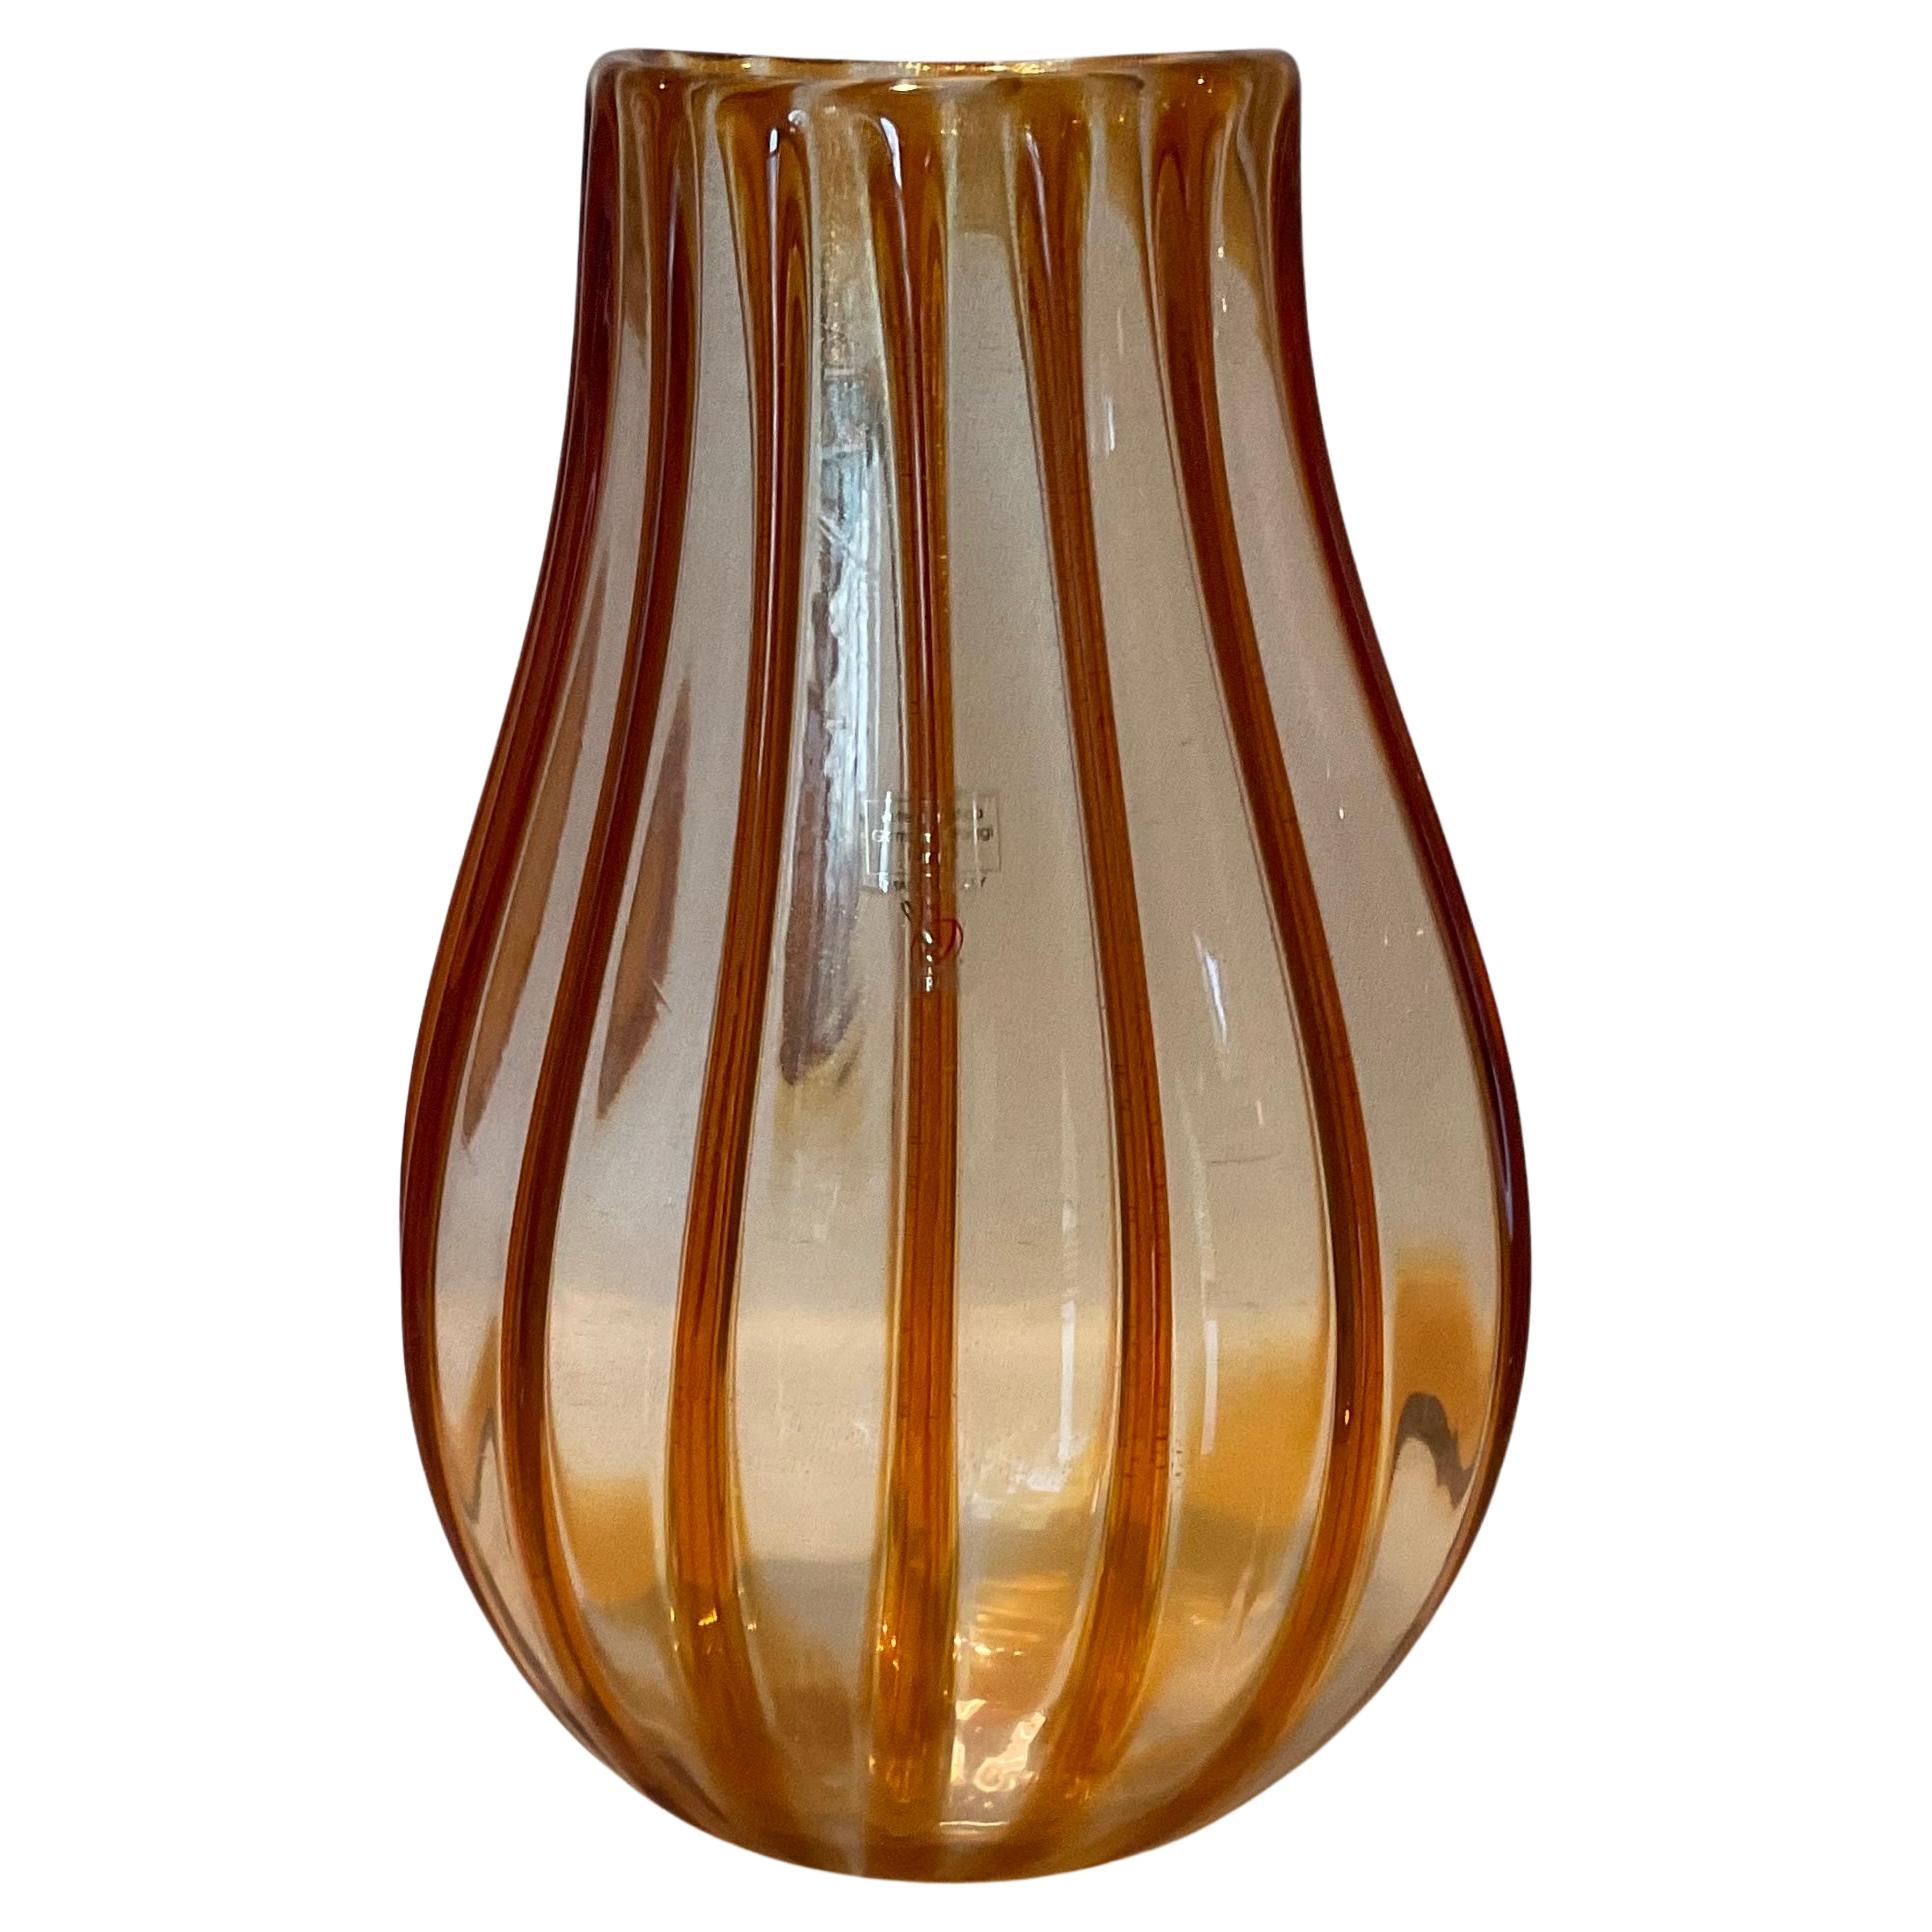 Gambaro & Poggi Gran jarrón de cristal dorado de Murano Firmado por el artista Vidrio aplicado